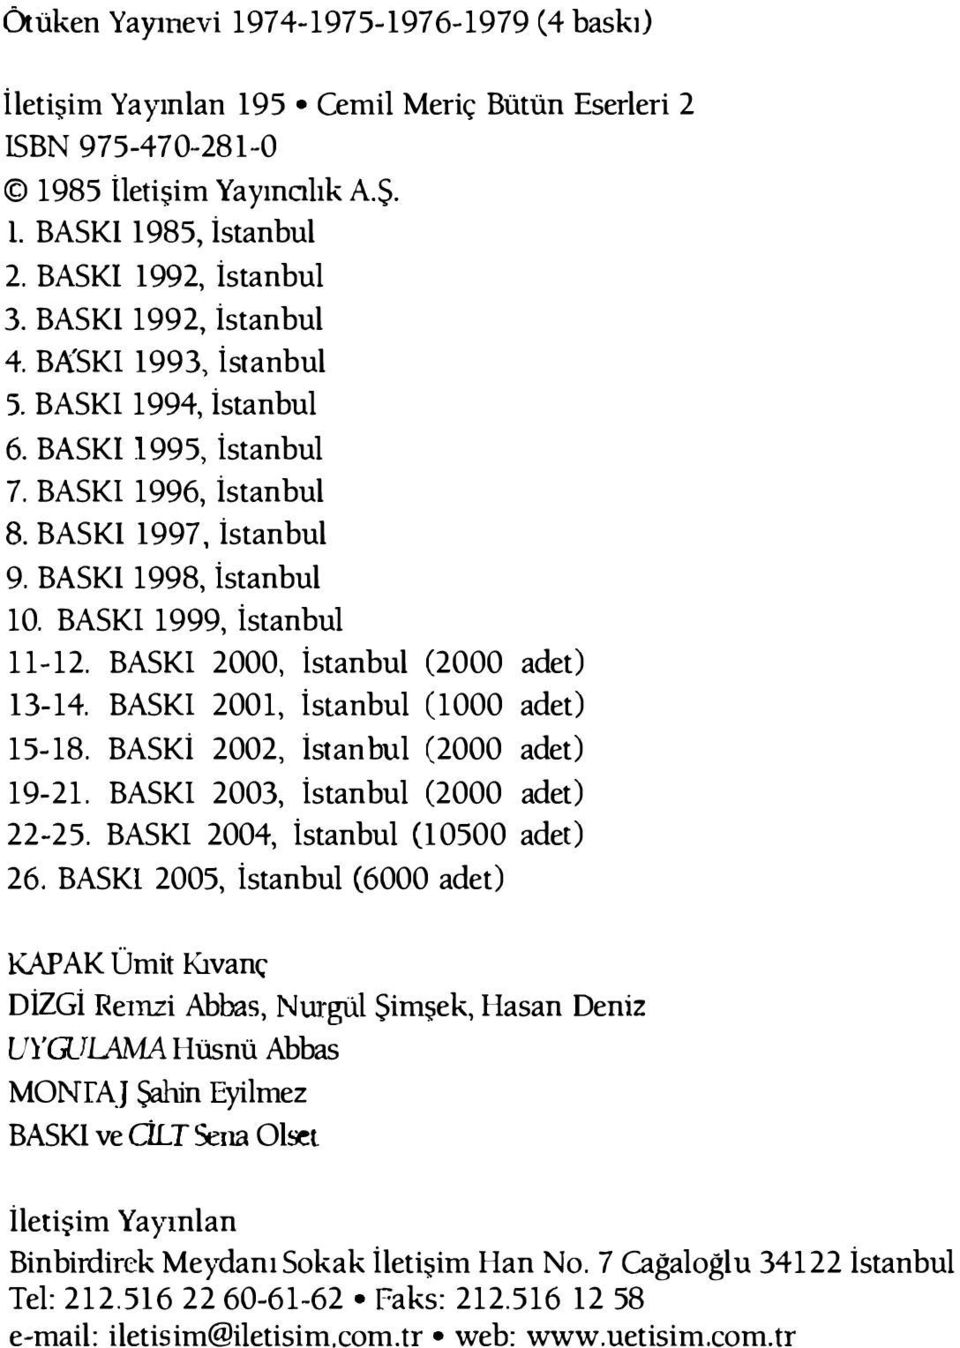 BASKI 2000, İstanbul (2000 adet) 13-14. BASKI 2001, İstanbul (1000 adet) 15-18. BASKİ 2002, İstanbul (2000 adet) 19-21. BASKI 2003, İstanbul (2000 adet) 22-25. BASKI 2004, İstanbul (10500 adet) 26.